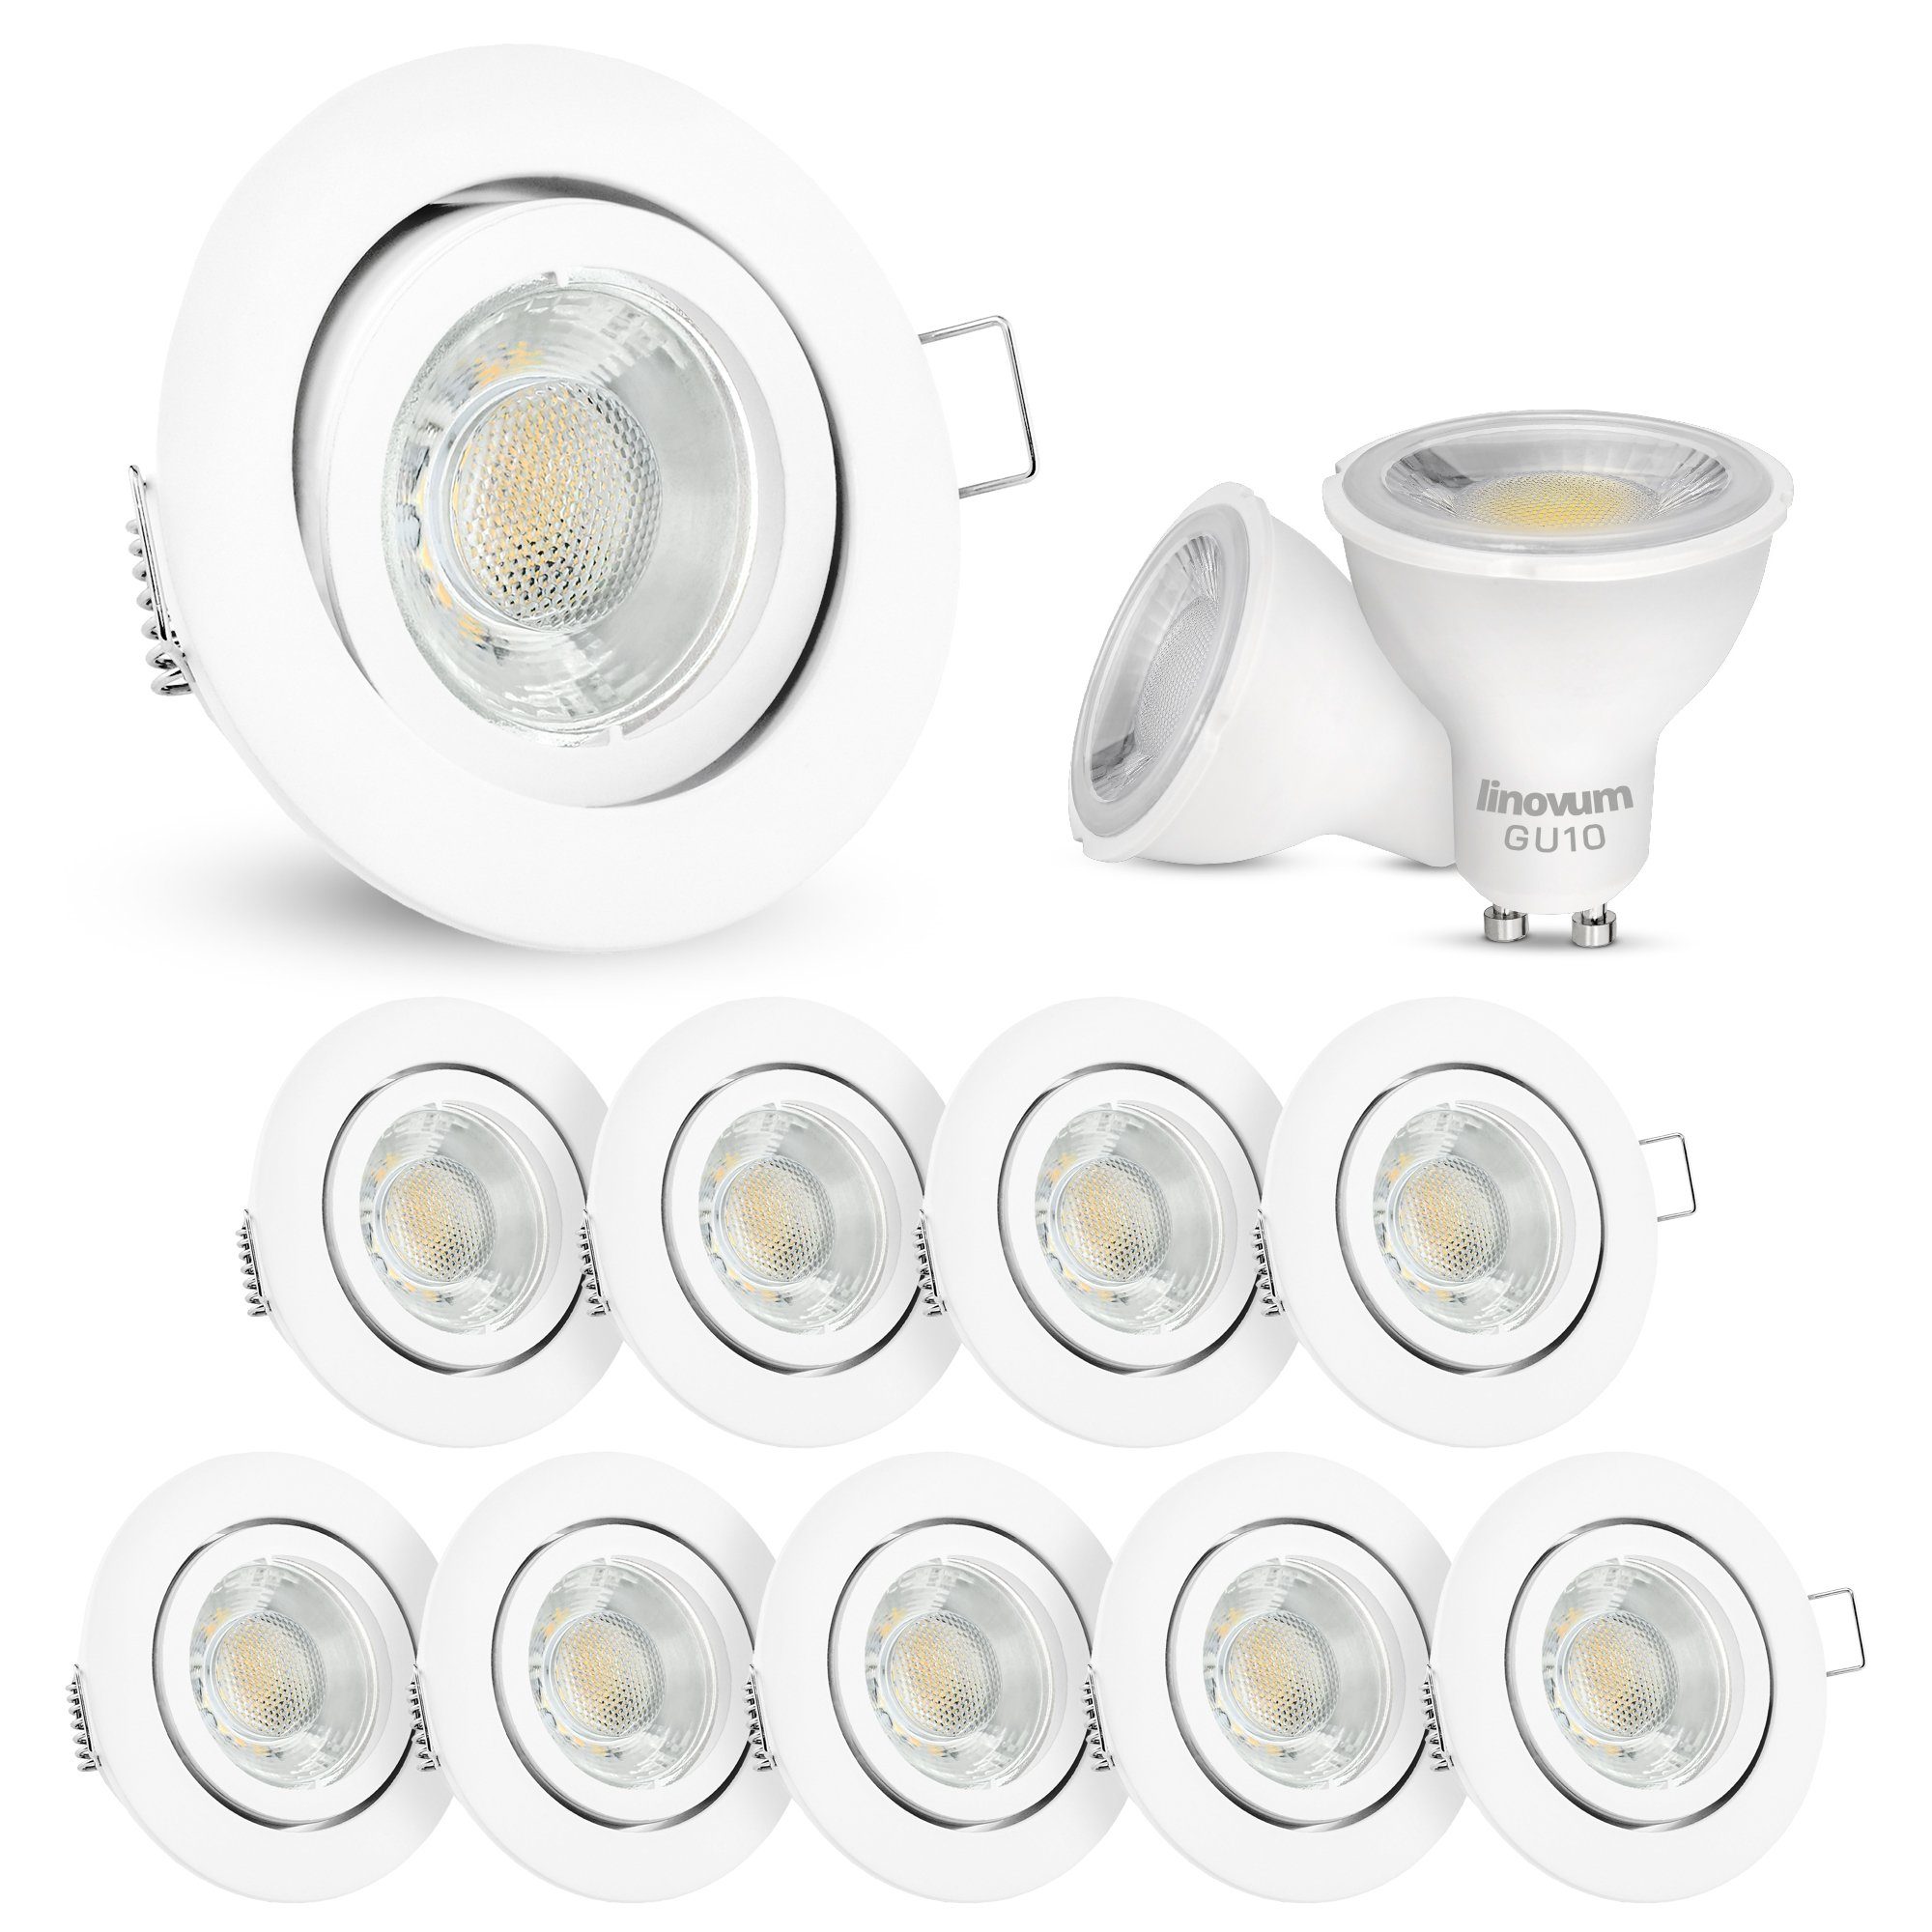 inklusive, Einbaustrahler 10 Leuchtmittel LED Spot Einbaustrahler inklusive rund Leuchtmittel LED schwenkbar weiss GU10, linovum x inkl. LED